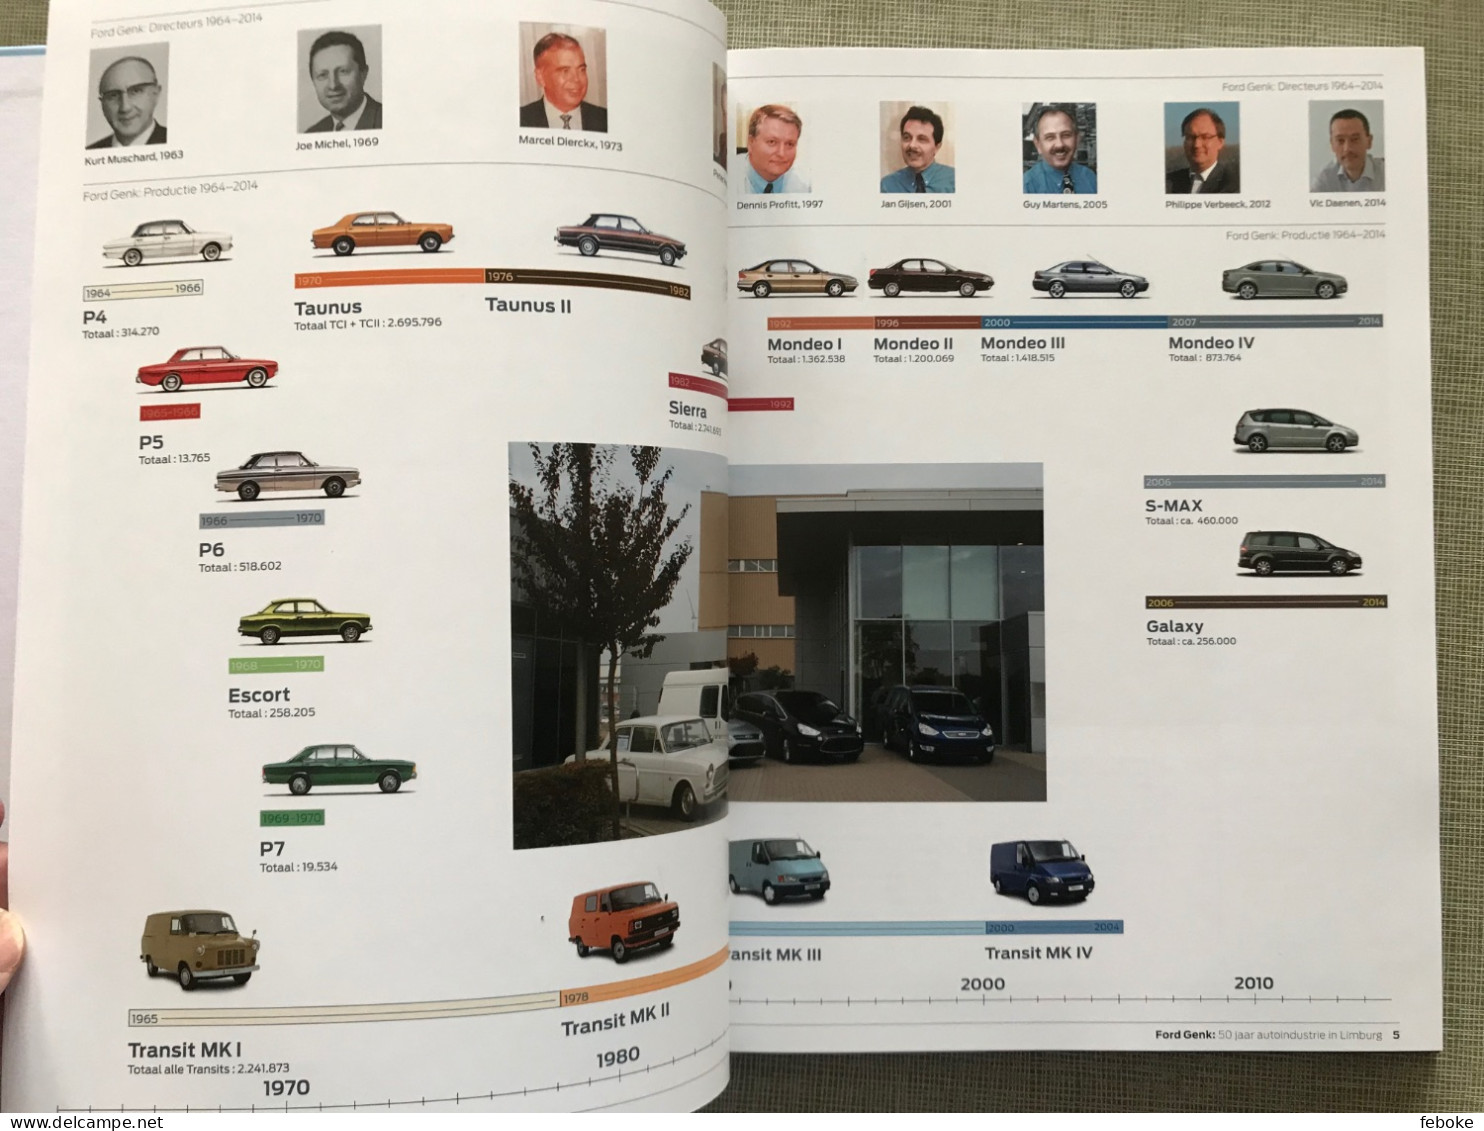 FORD GENK 1964-2014 + DE EEUW VAN FORD FORD MOTOR COMPANY 100 YEARS - AUTOINDUSTRIE FORD FOTOBOEKEN GESCHIEDENIS - Altri & Non Classificati